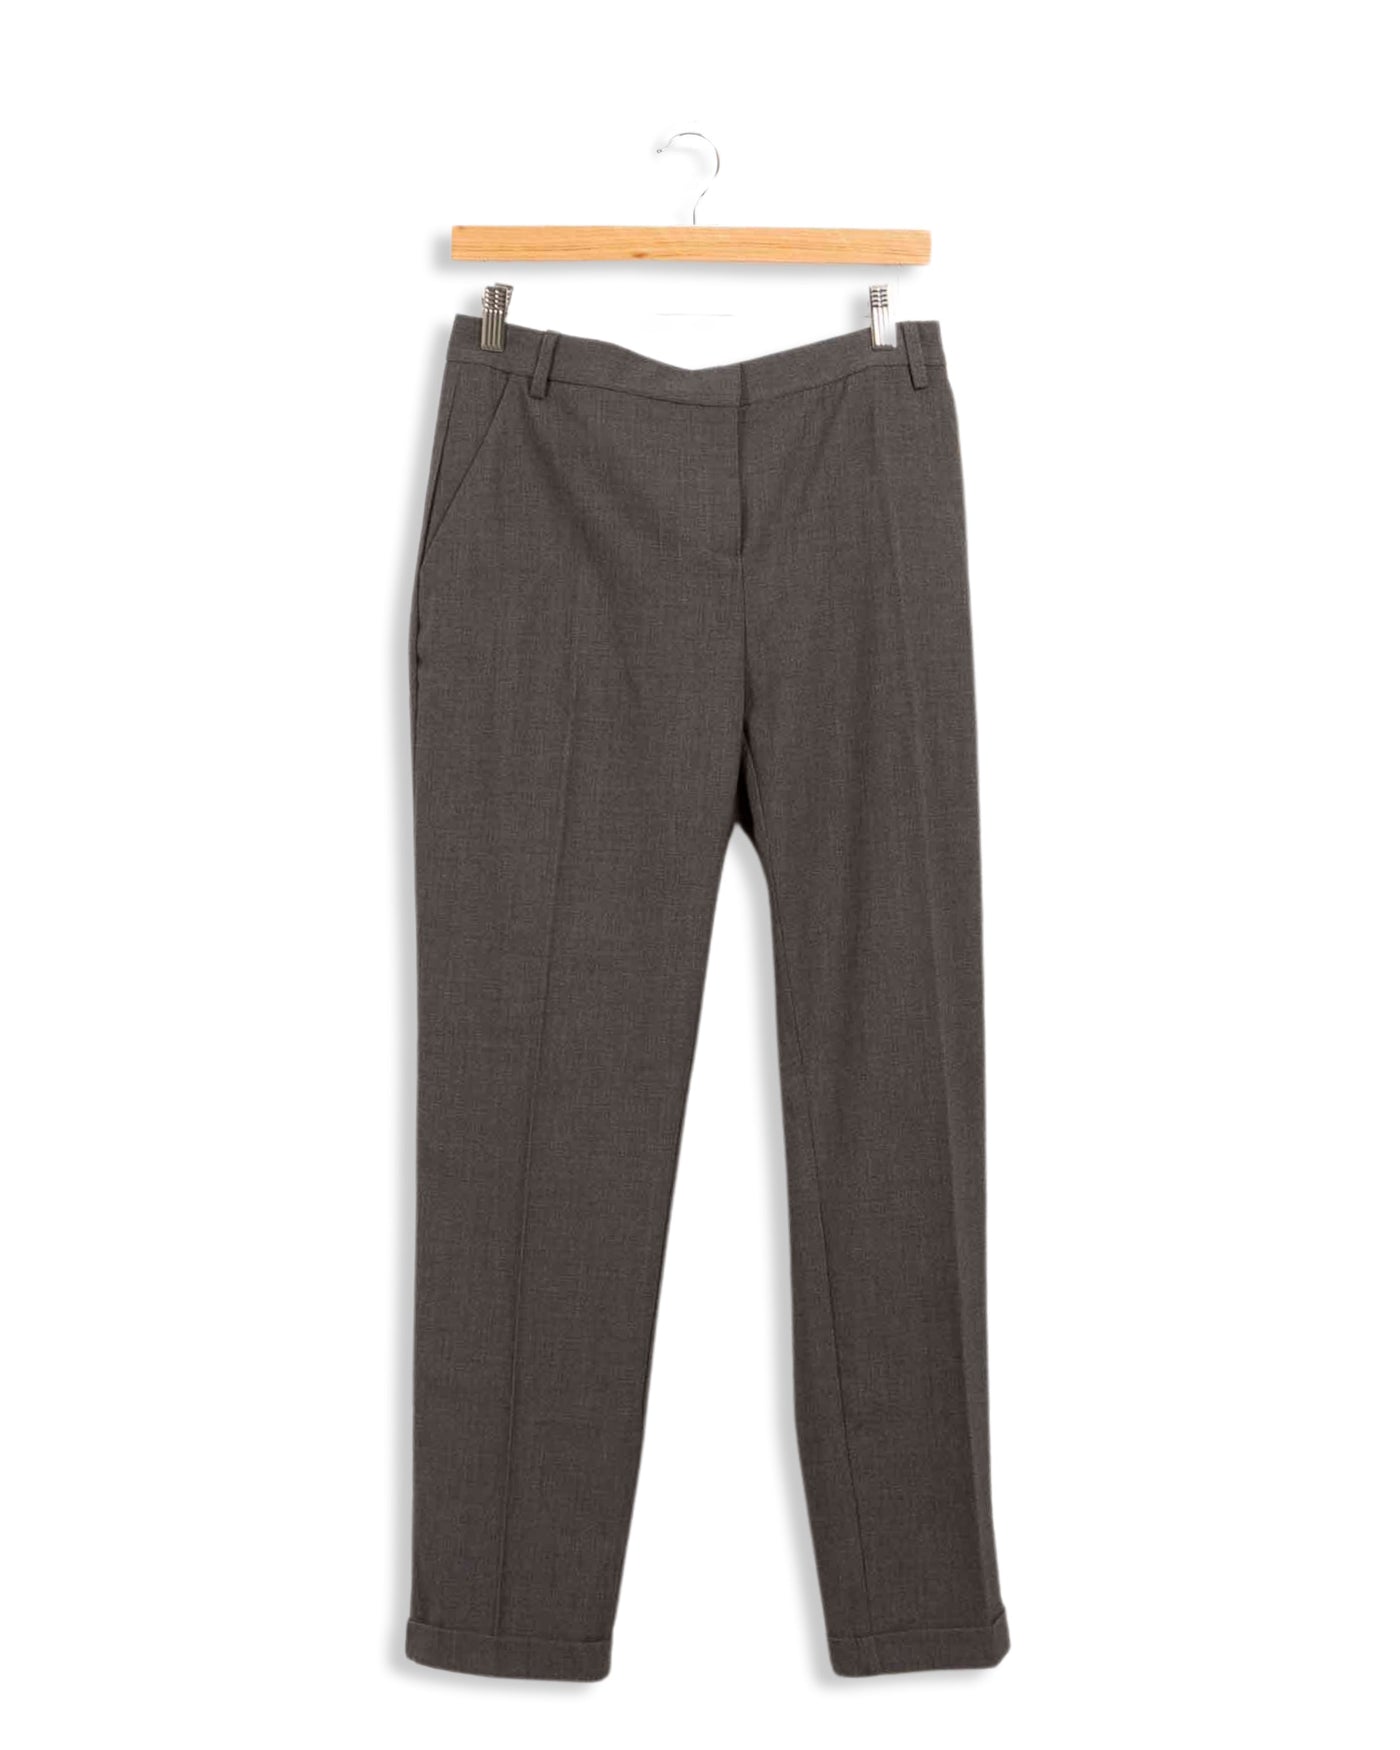 Pantalon tailleur La Fée Maraboutée - 42